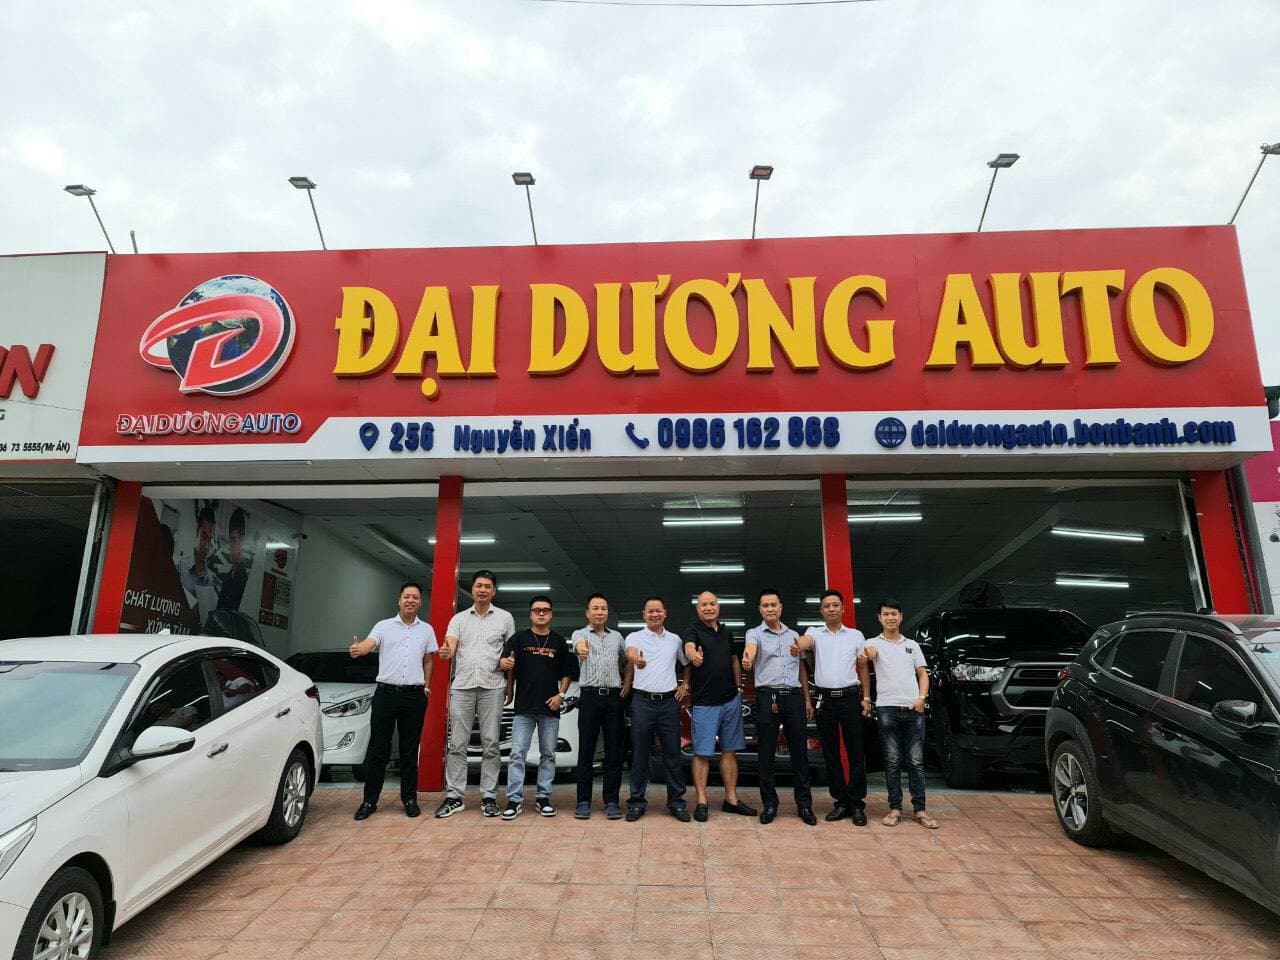 NAM DƯƠNG AUTO  Chợ Tốt  Website Mua Bán Rao Vặt Trực Tuyến Hàng Đầu Của  Người Việt